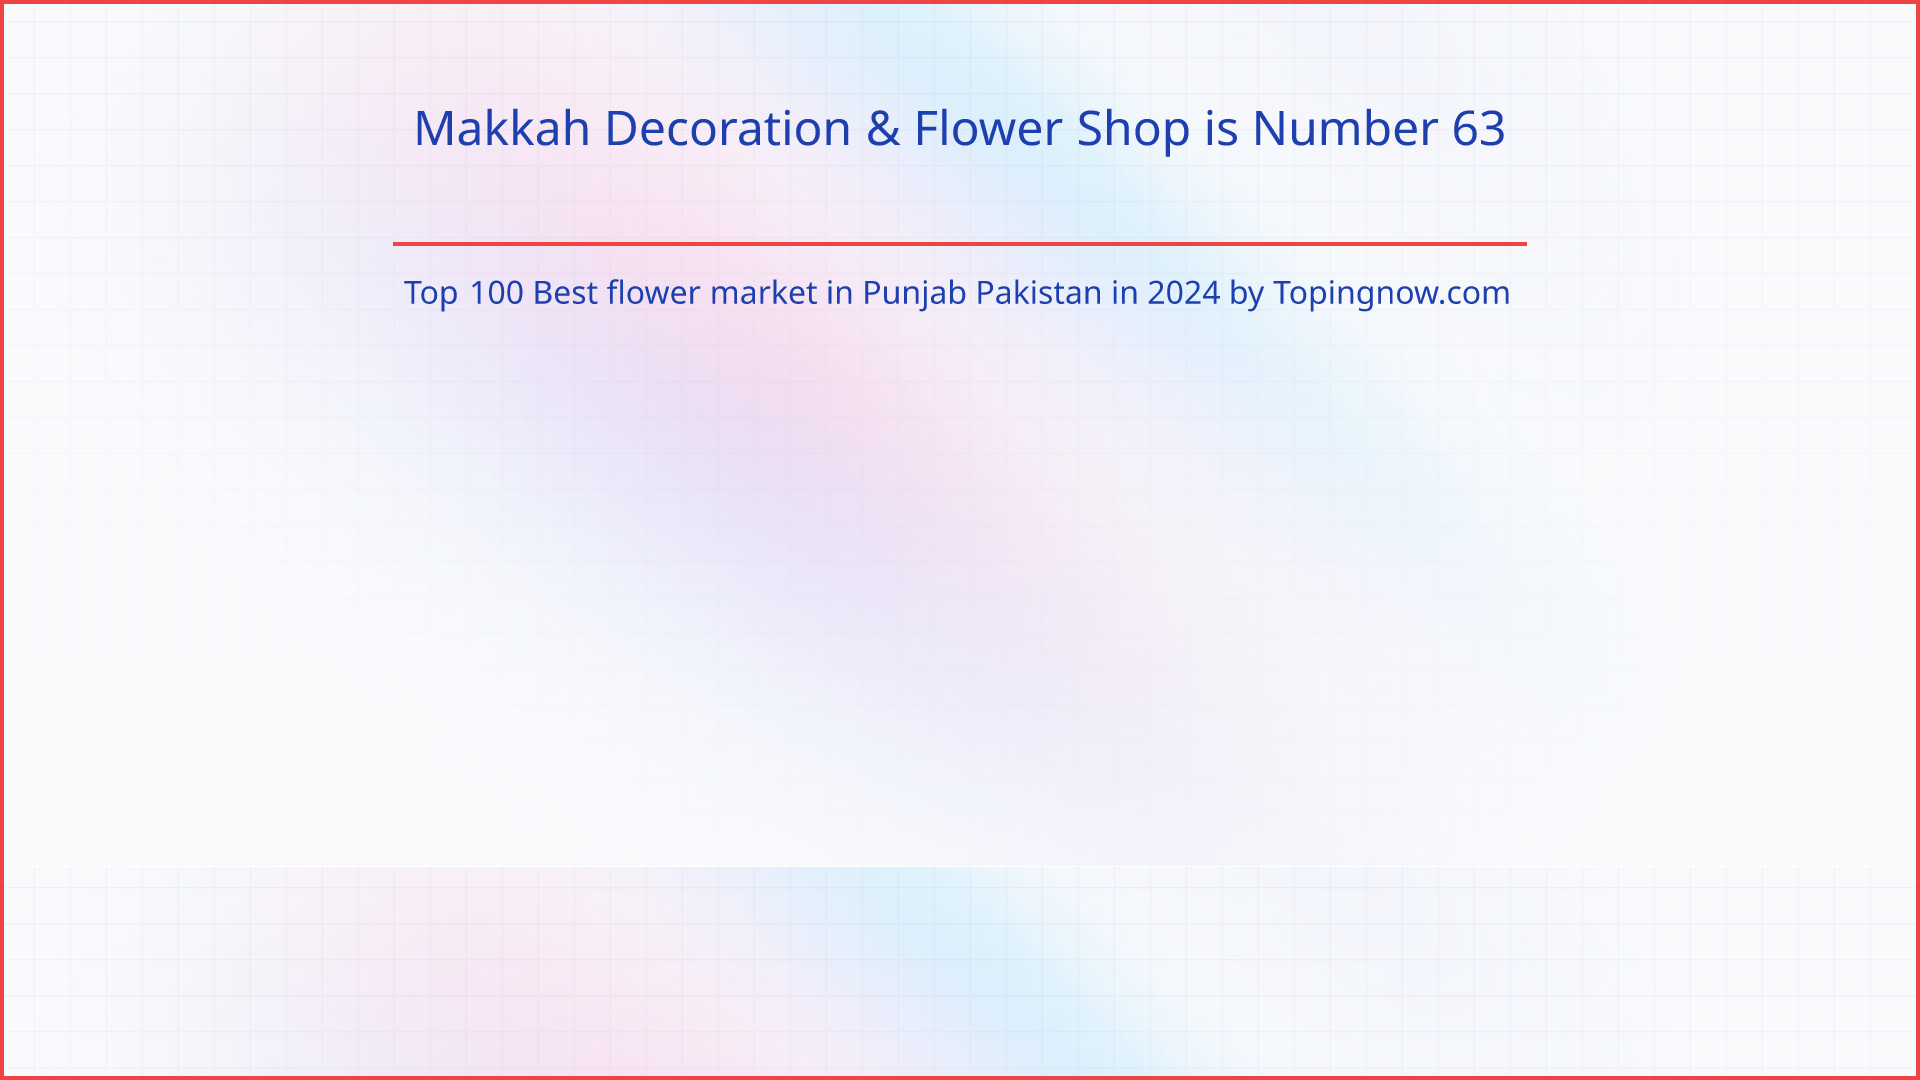 Makkah Decoration & Flower Shop: Top 100 Best flower market in Punjab Pakistan in 2024